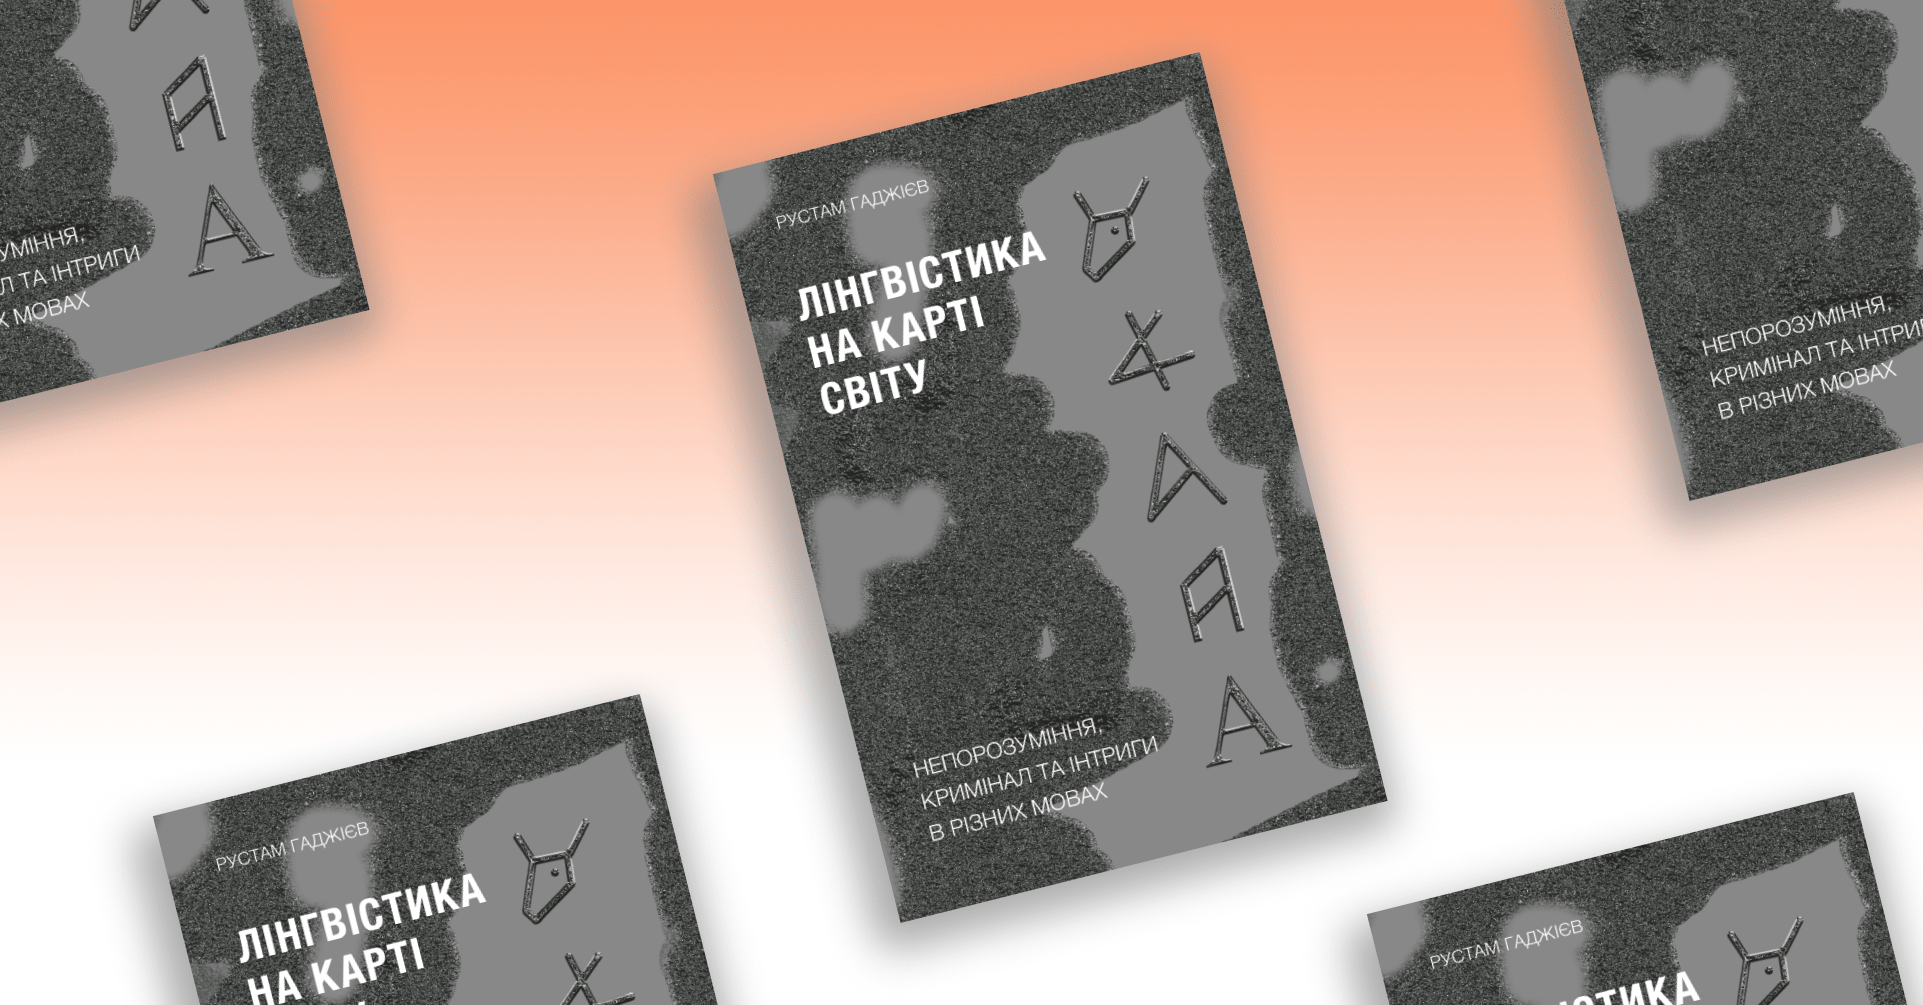 linhvistyka cover - «Вічне сяйво вкраденого грому». Фрагмент із книжки «Лінгвістика на карті світу» Рустама Гаджієва